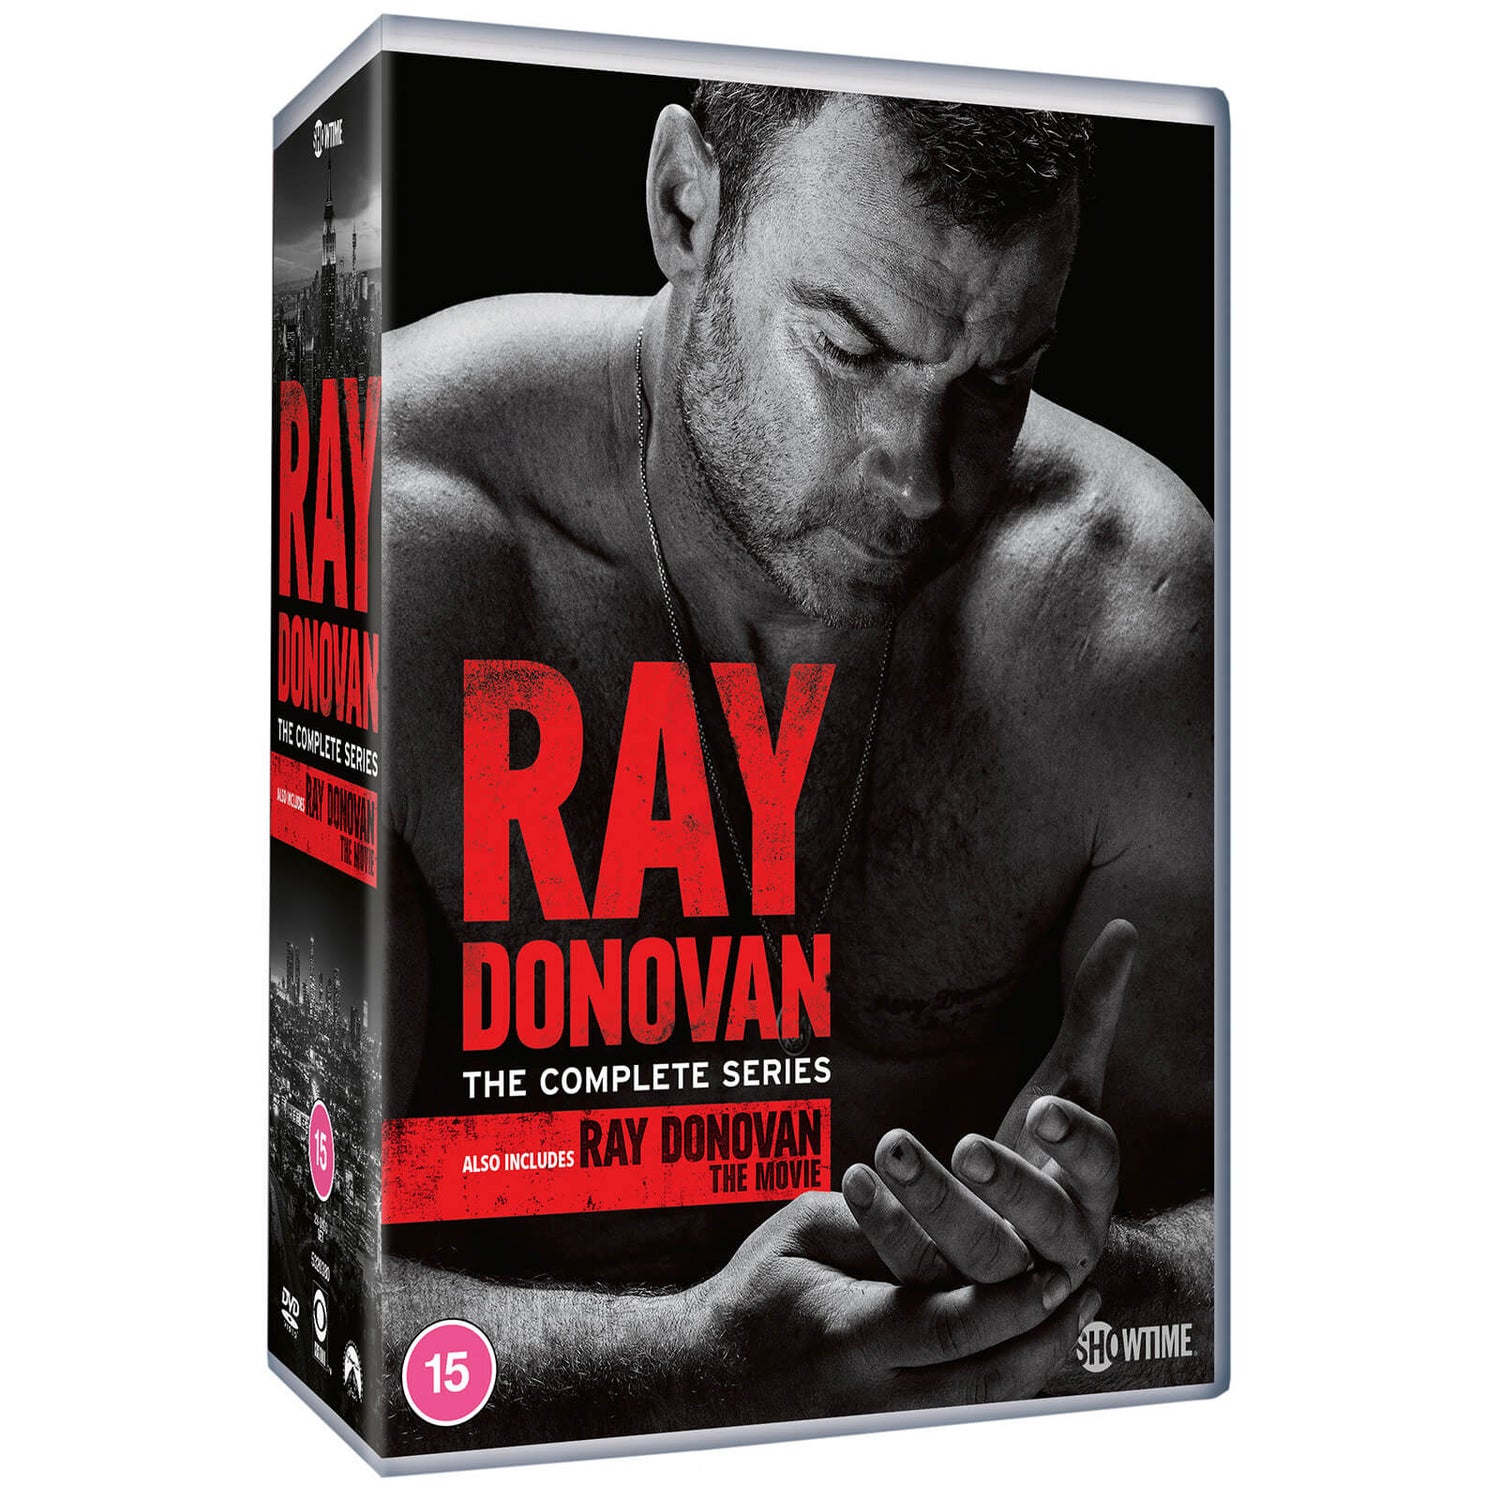 Ray Donovan: Seasons 1 - 7 Collection